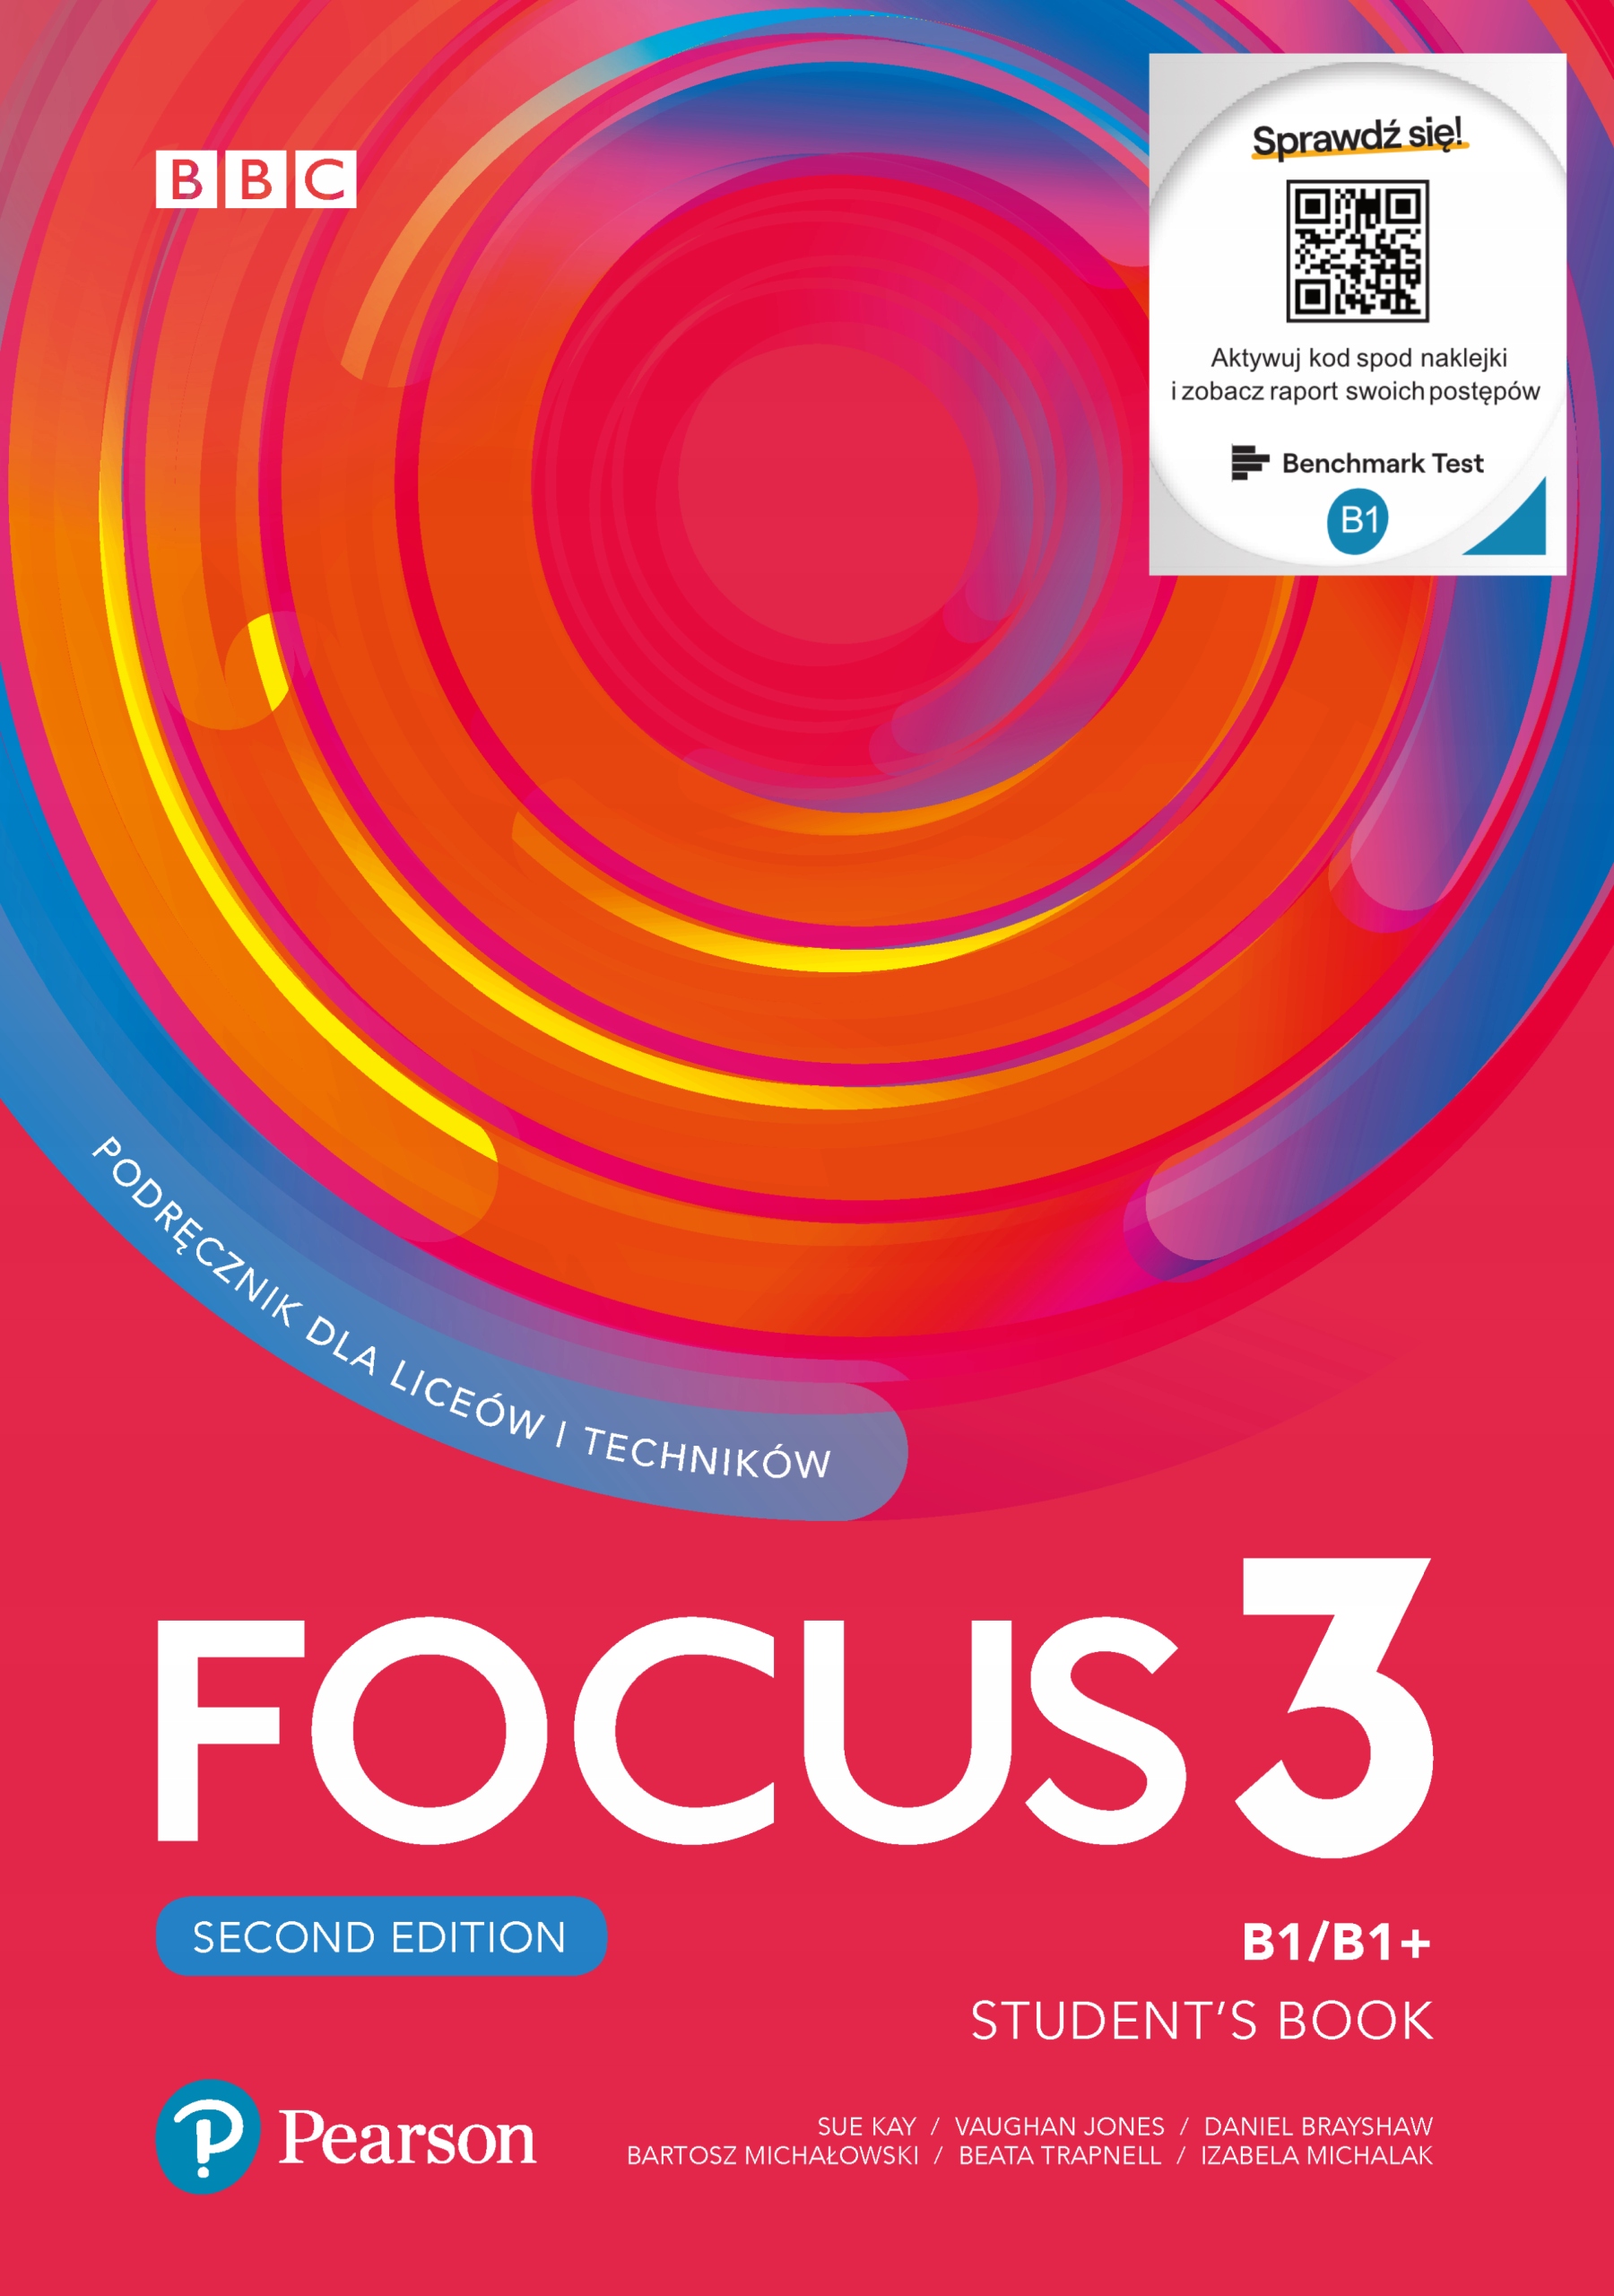 Включи английский фокус. Focus 3 student's book second Edition. Focus 3 second Edition. Focus second Edition Level 2. Focus 3 Pearson.